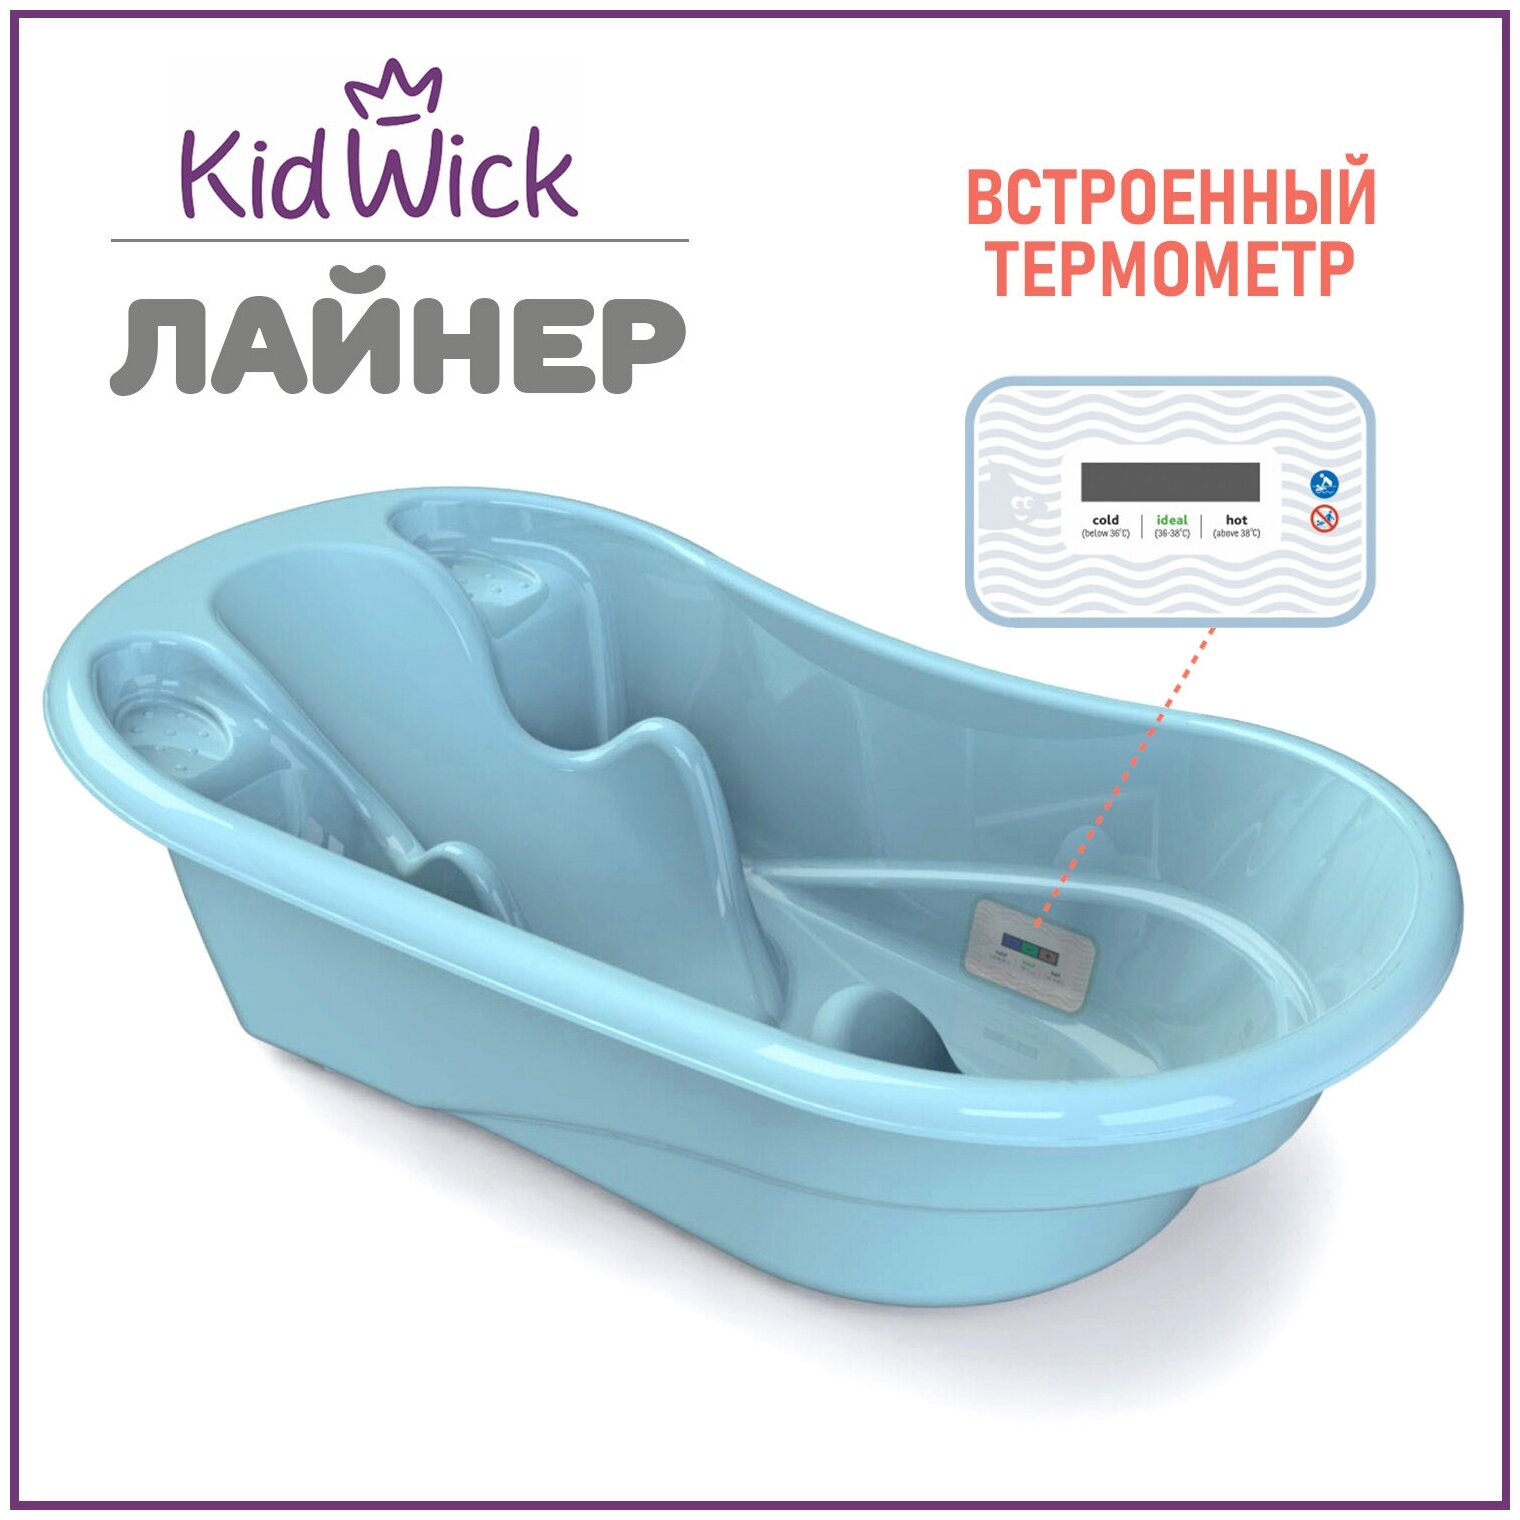 Ванночка для купания новорожденных Kidwick Лайнер, с термометром, голубая